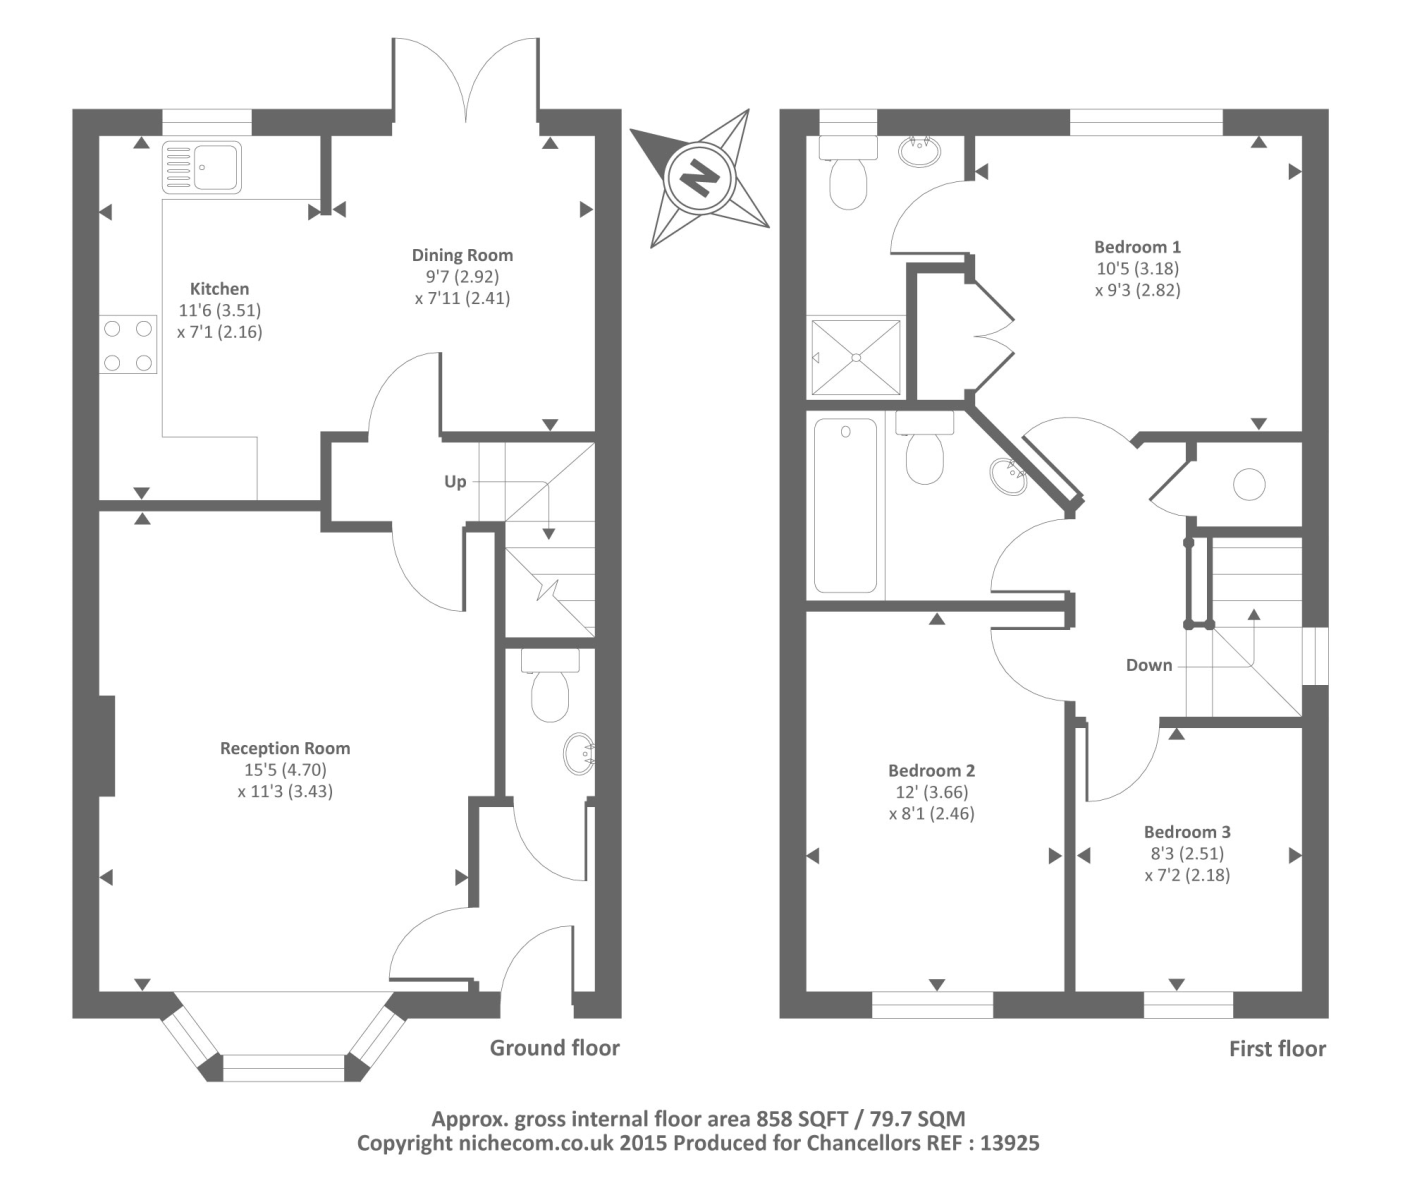 3 Bedrooms Semi-detached house to rent in Newbury, Berkshire RG14